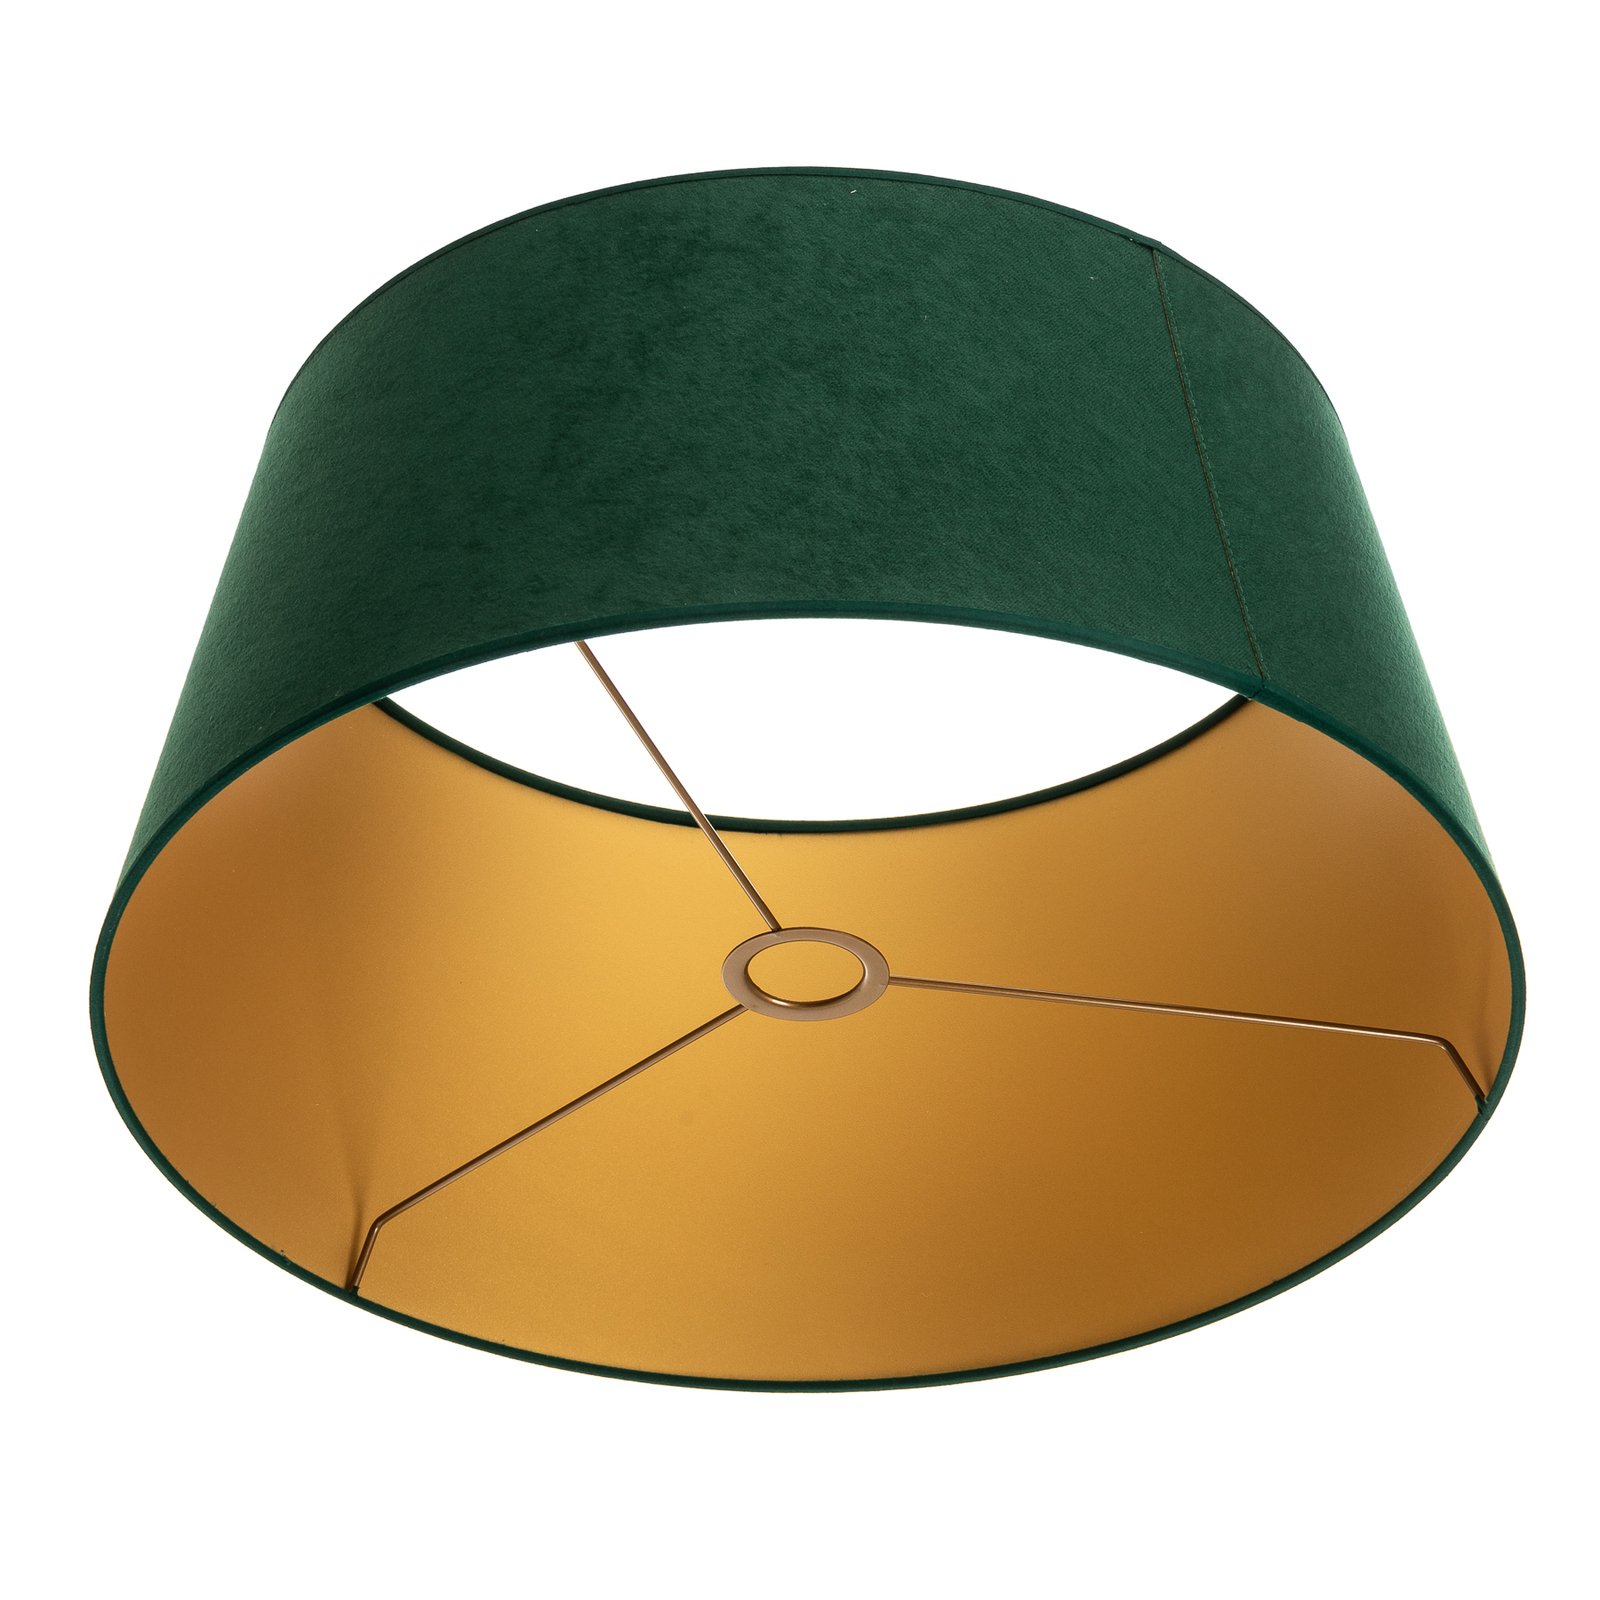 Cone lámpaernyő 25,5 cm magas, sötétzöld/arany